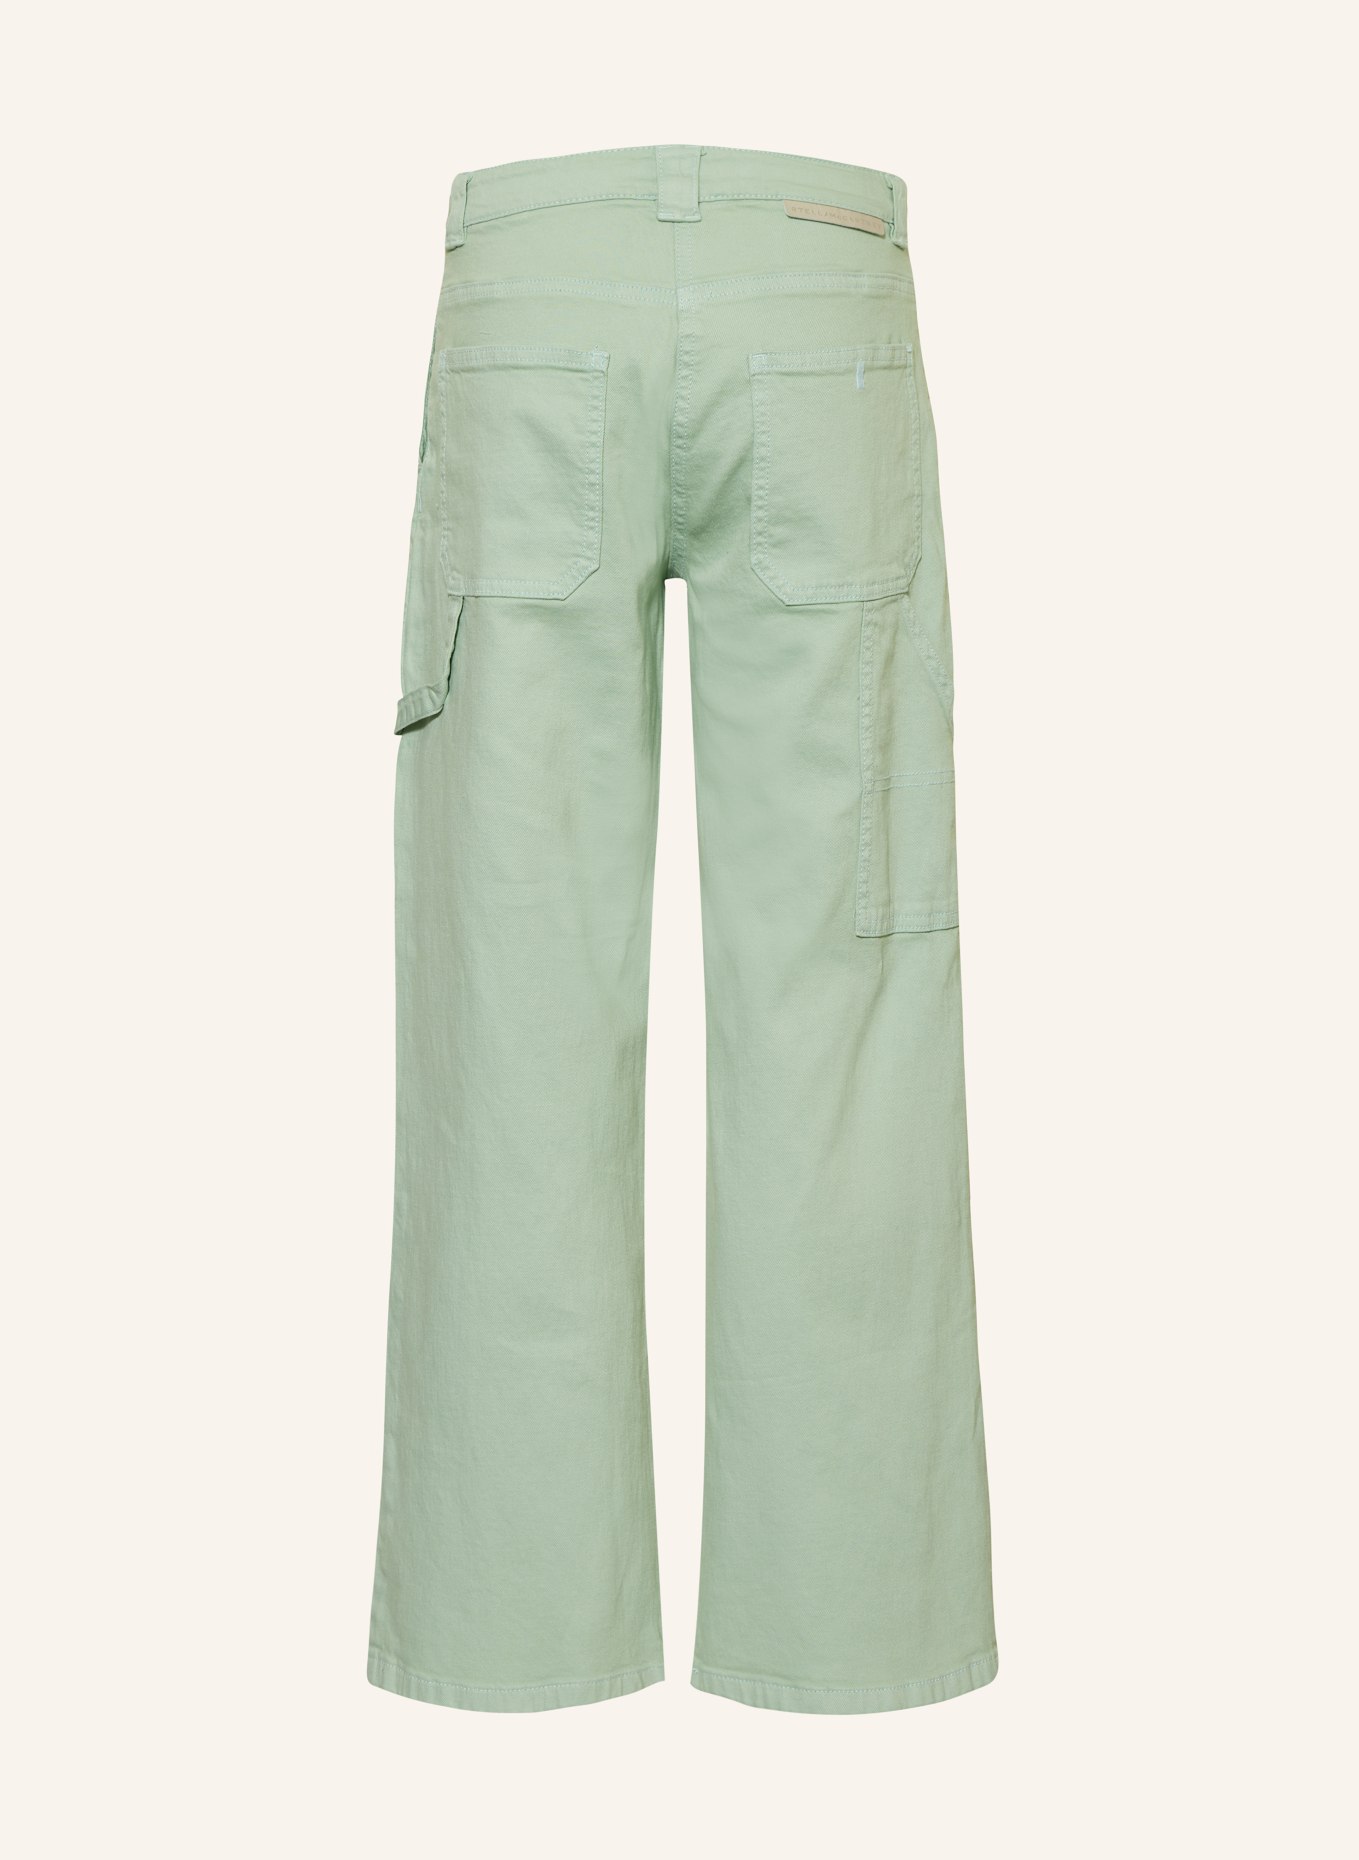 STELLA McCARTNEY KIDS Jeans, Farbe: 708 GREENISH (Bild 2)